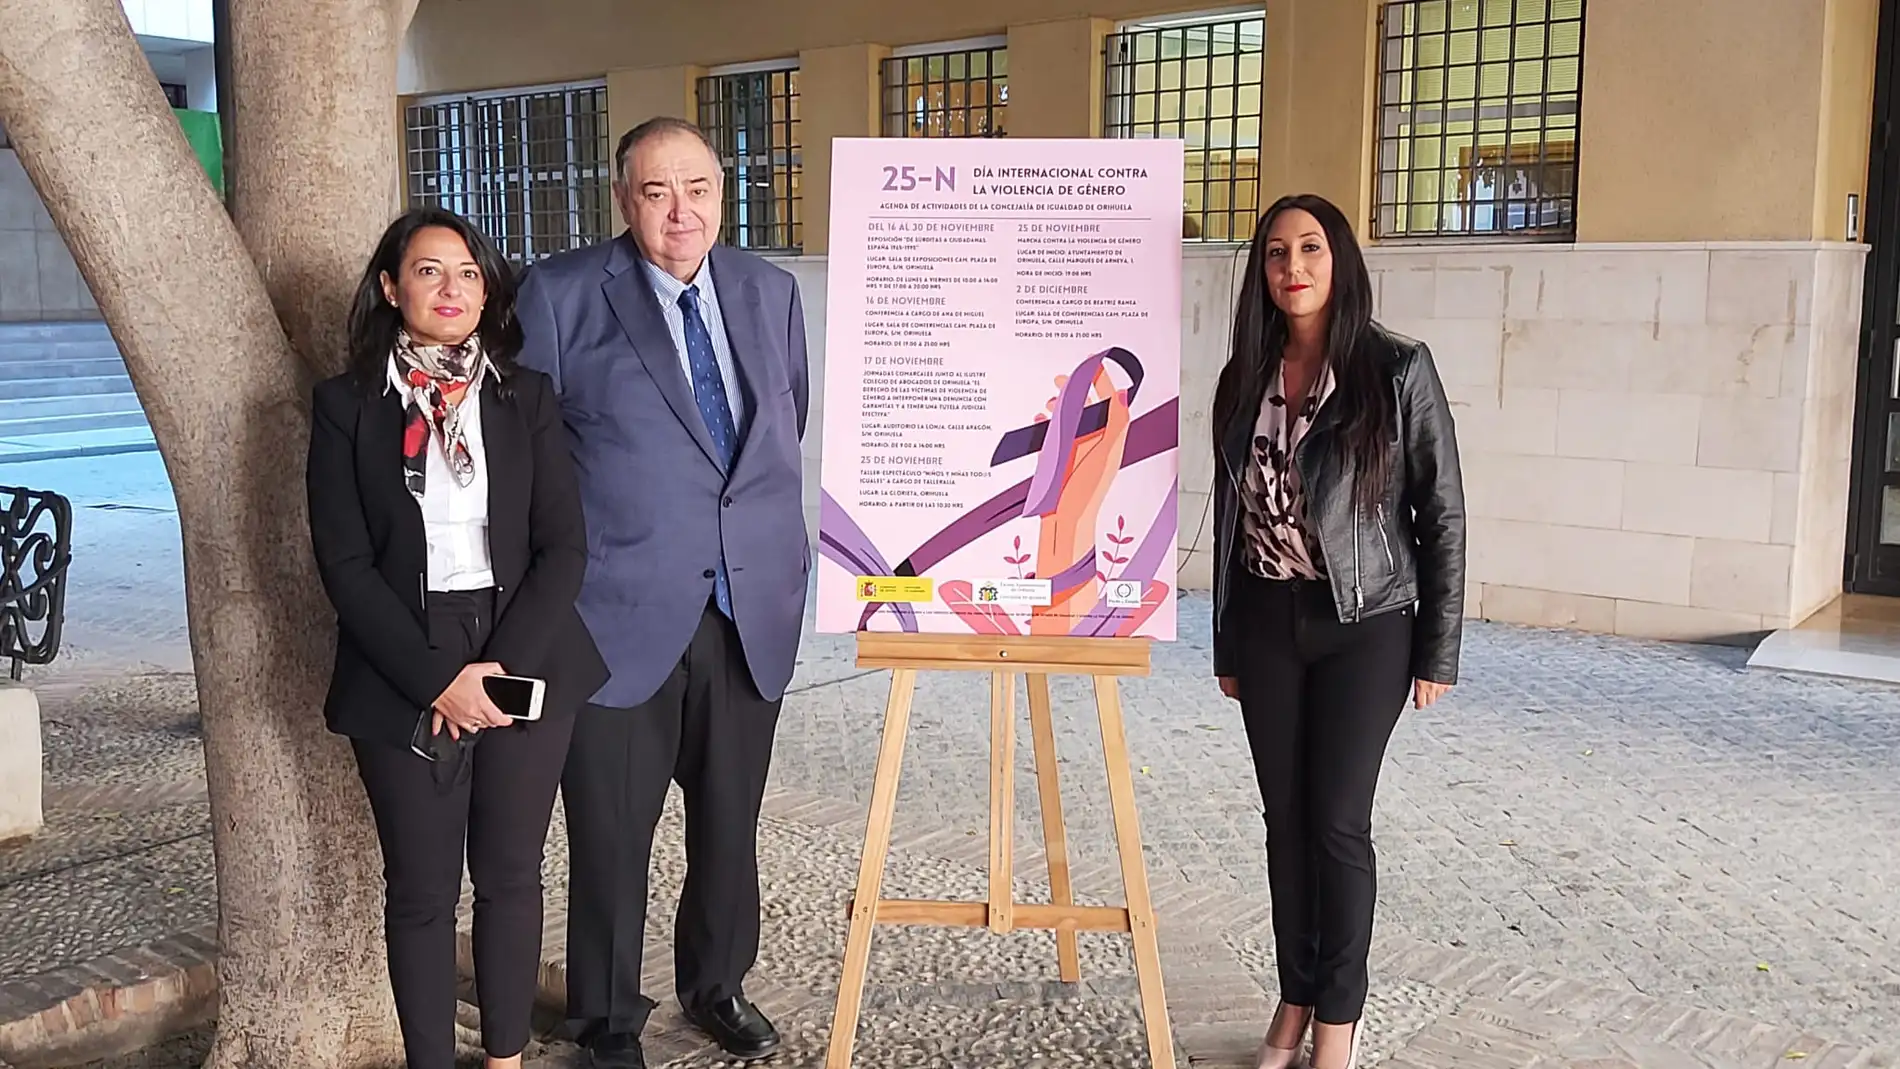 Igualdad y el Colegio de Abogados organizan una jornada a las víctimas de violencia de género 